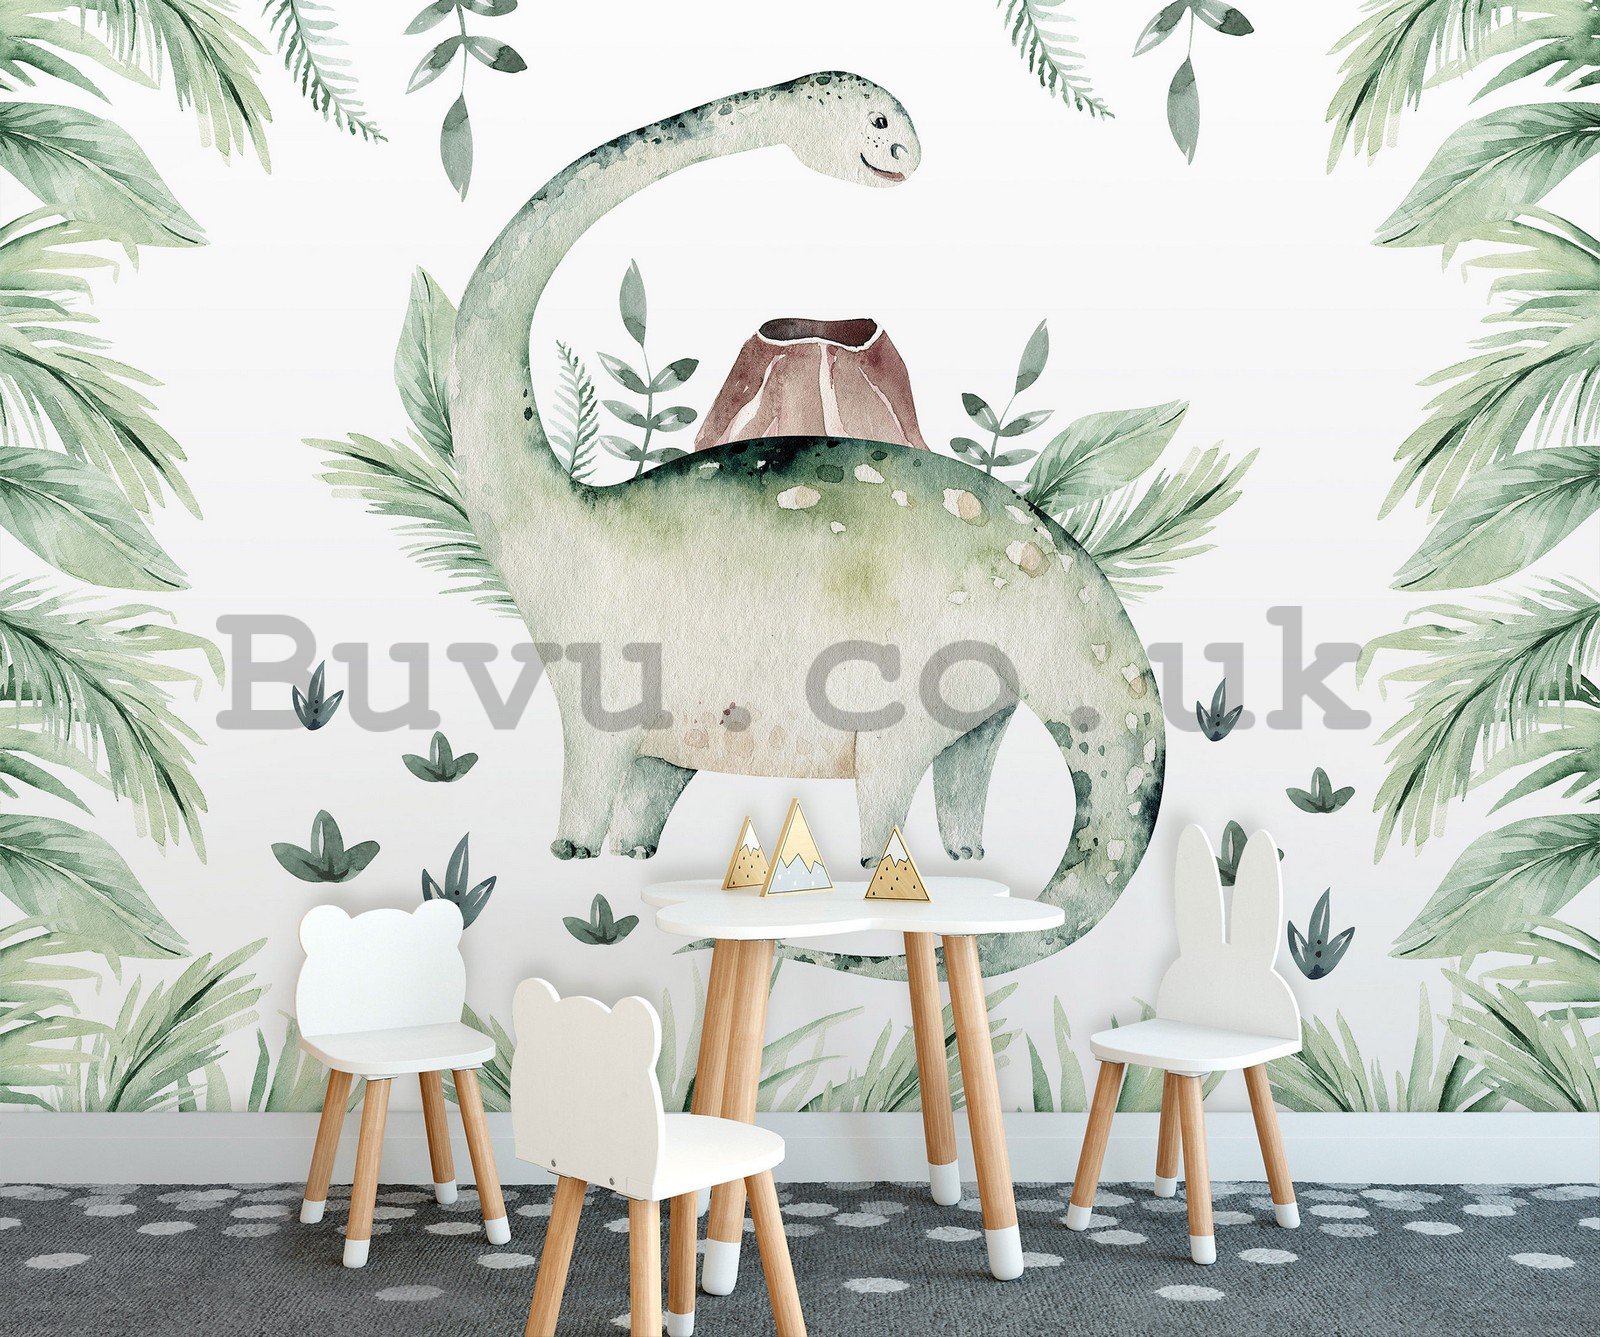 Wall mural vlies: Dinosaur in ferns - 254x184 cm